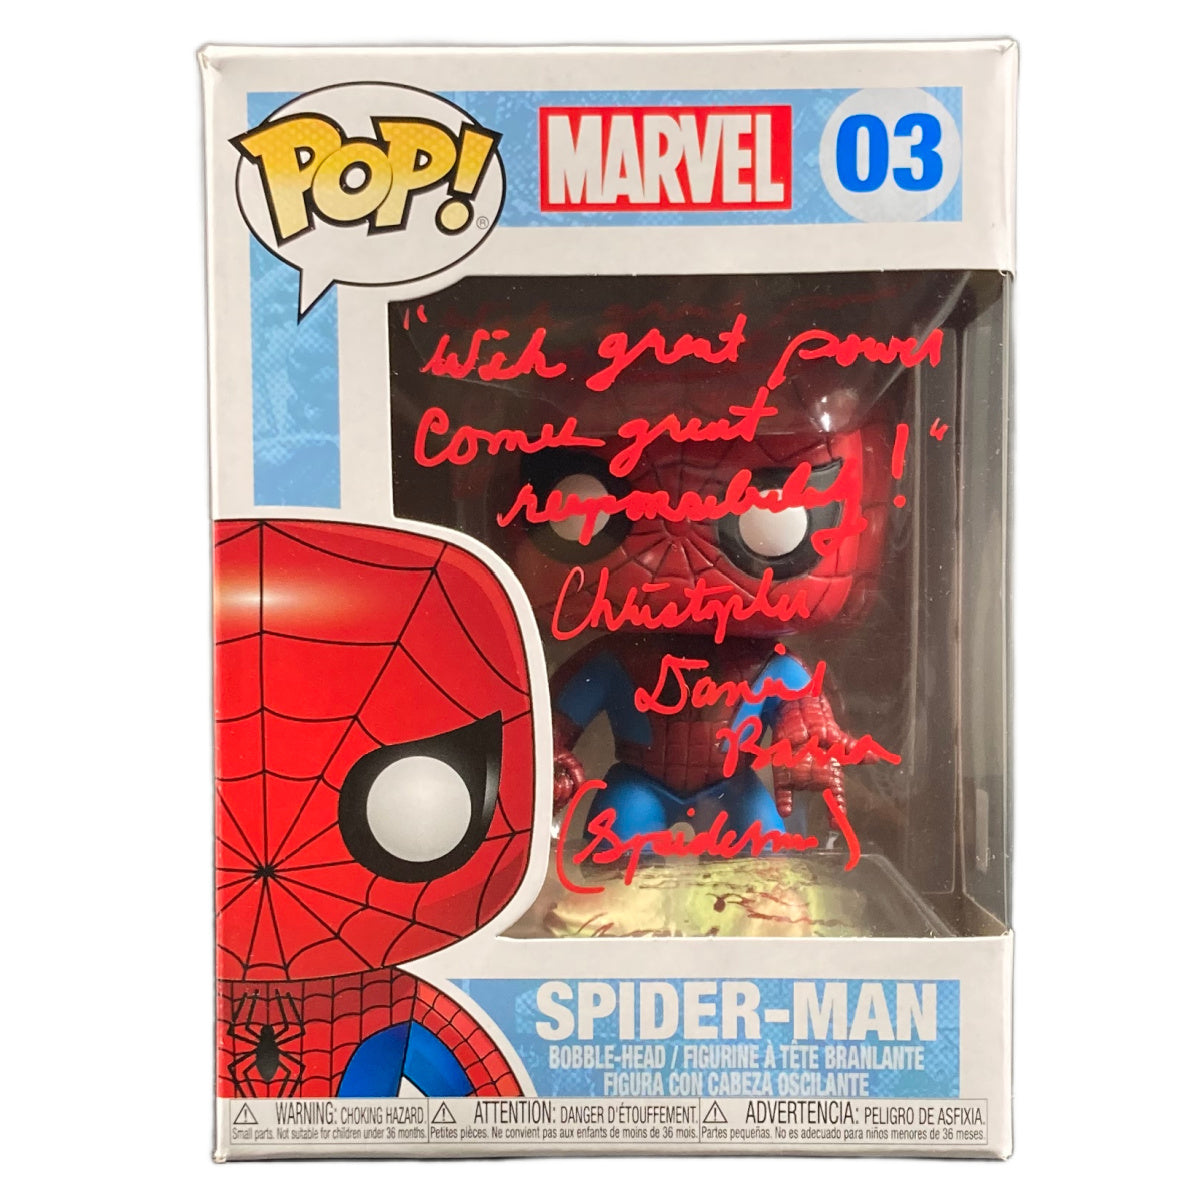 Christopher Daniel Barnes Signed Funko POP Marvel Spider-Man Autographed JSA COA